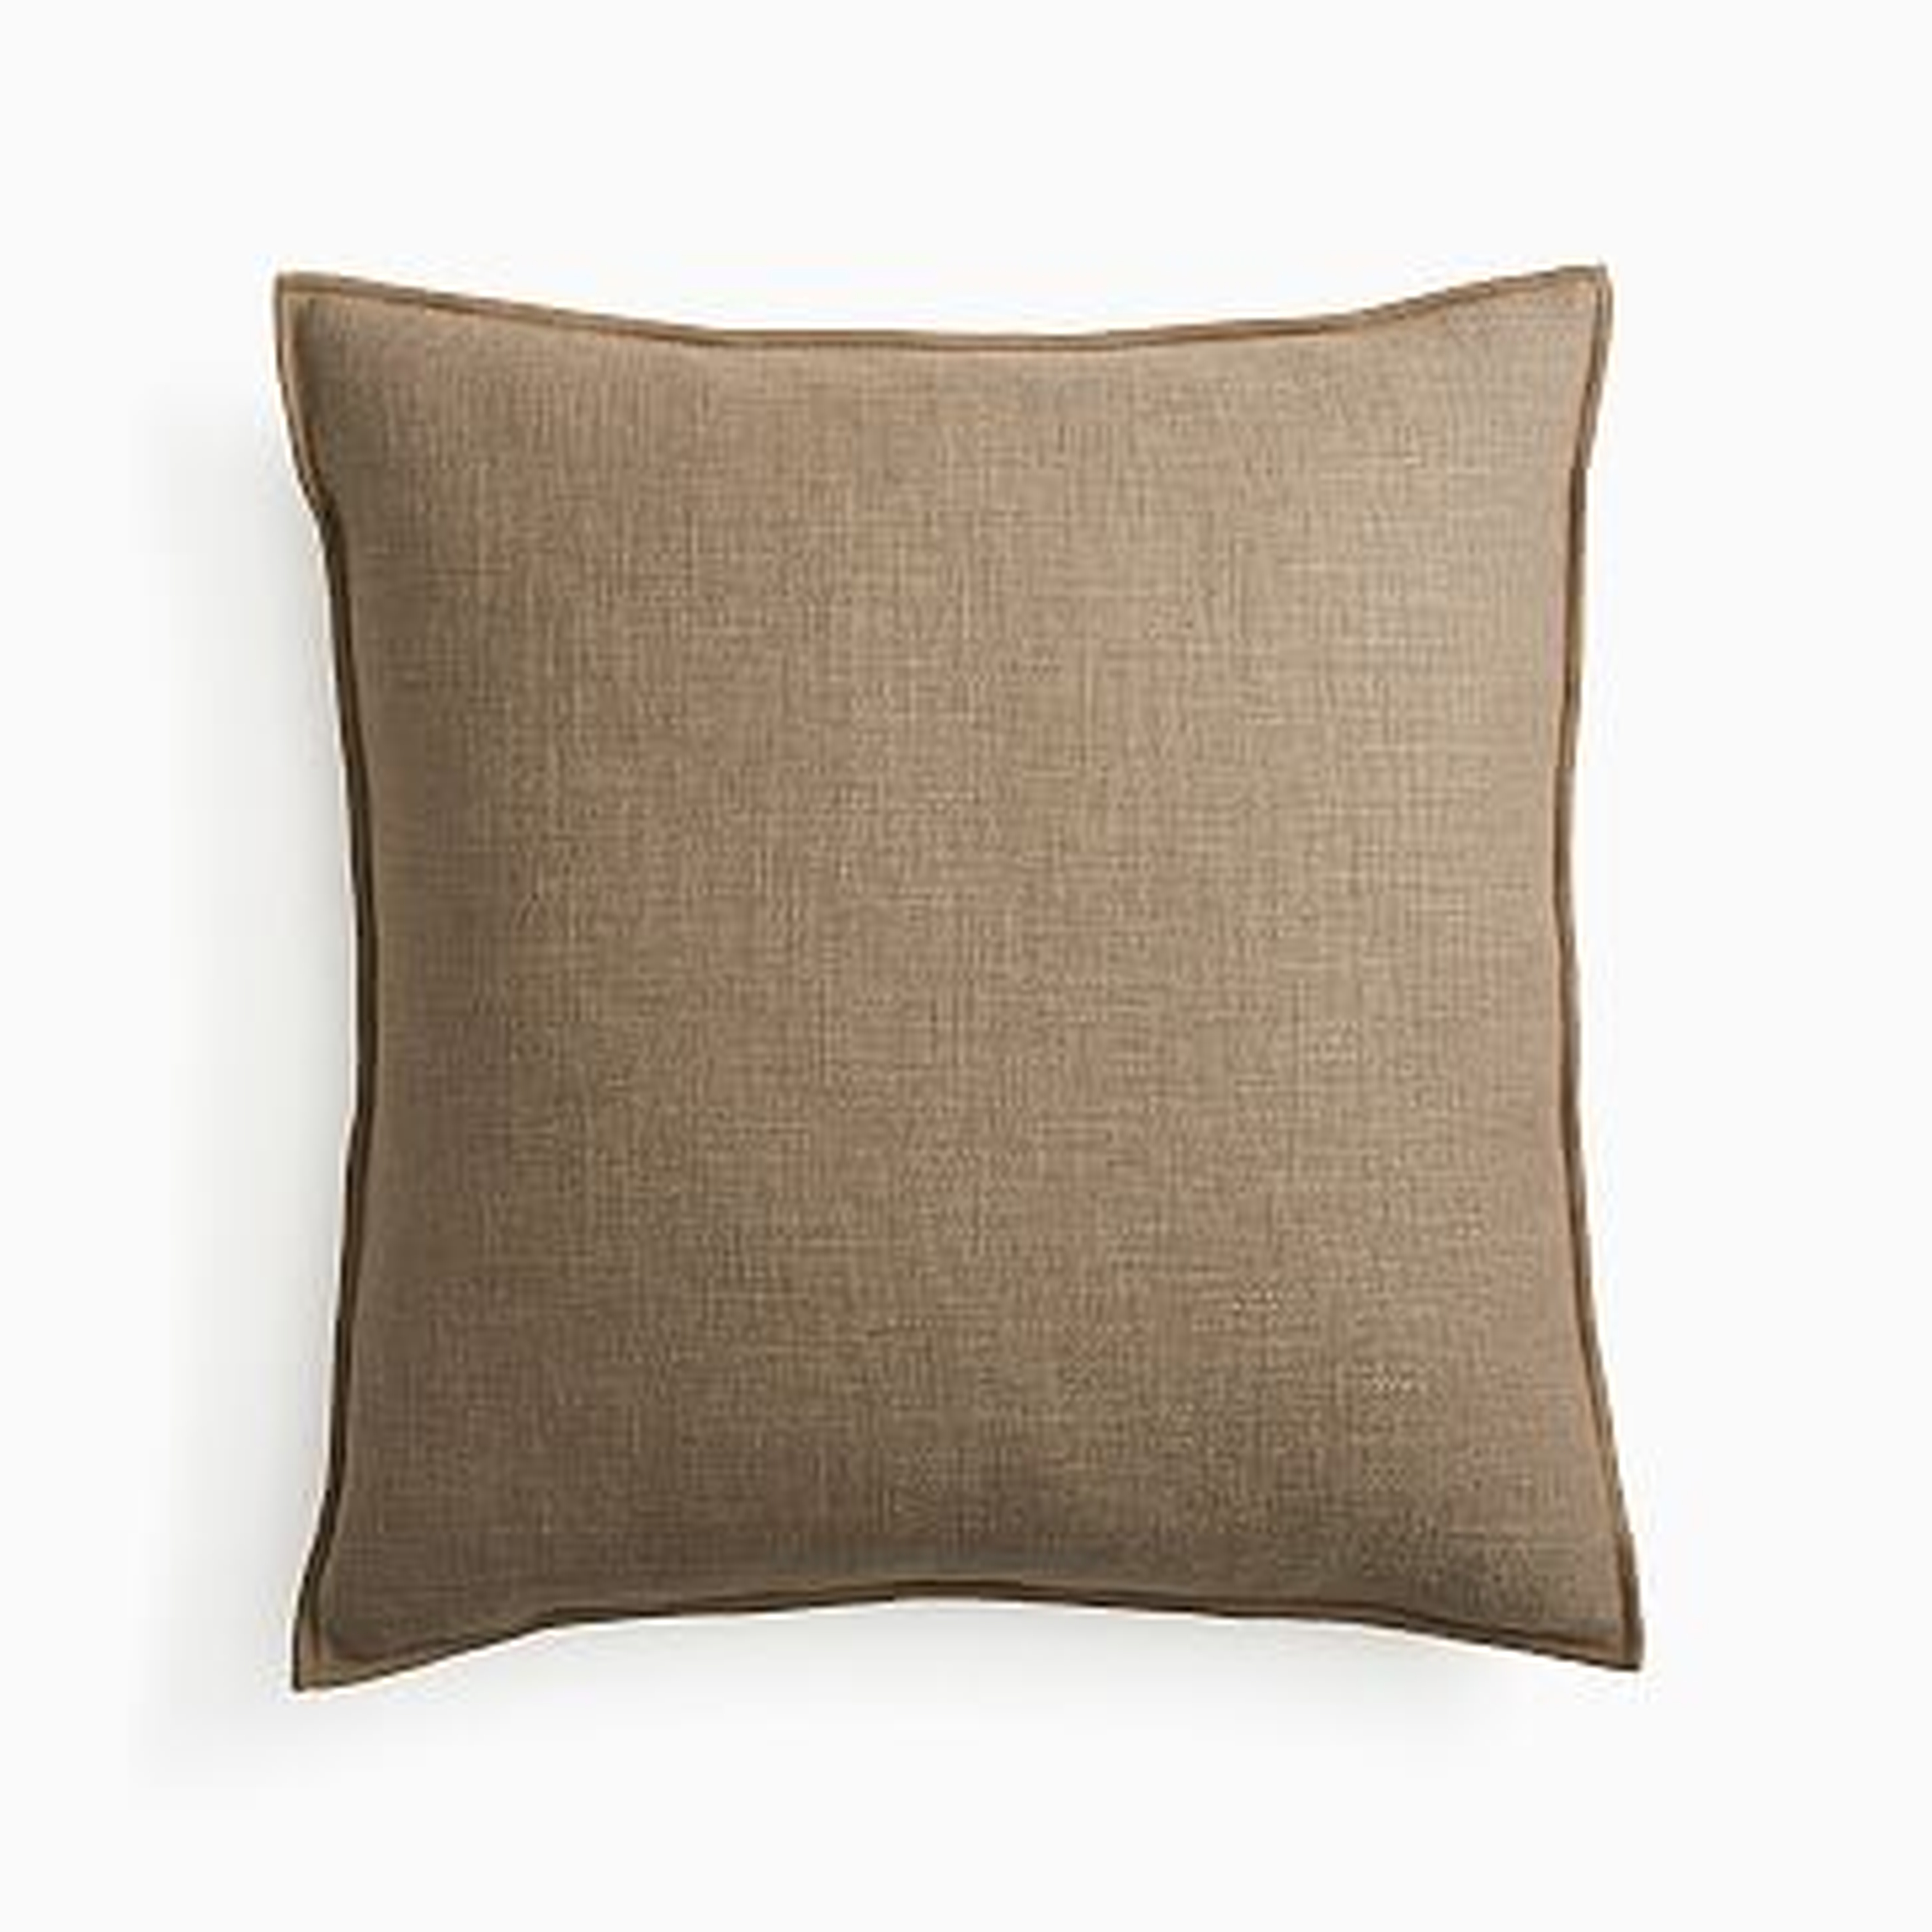 Classic Linen Pillow Cover, 20"x20", Mocha, Set of 2 - West Elm